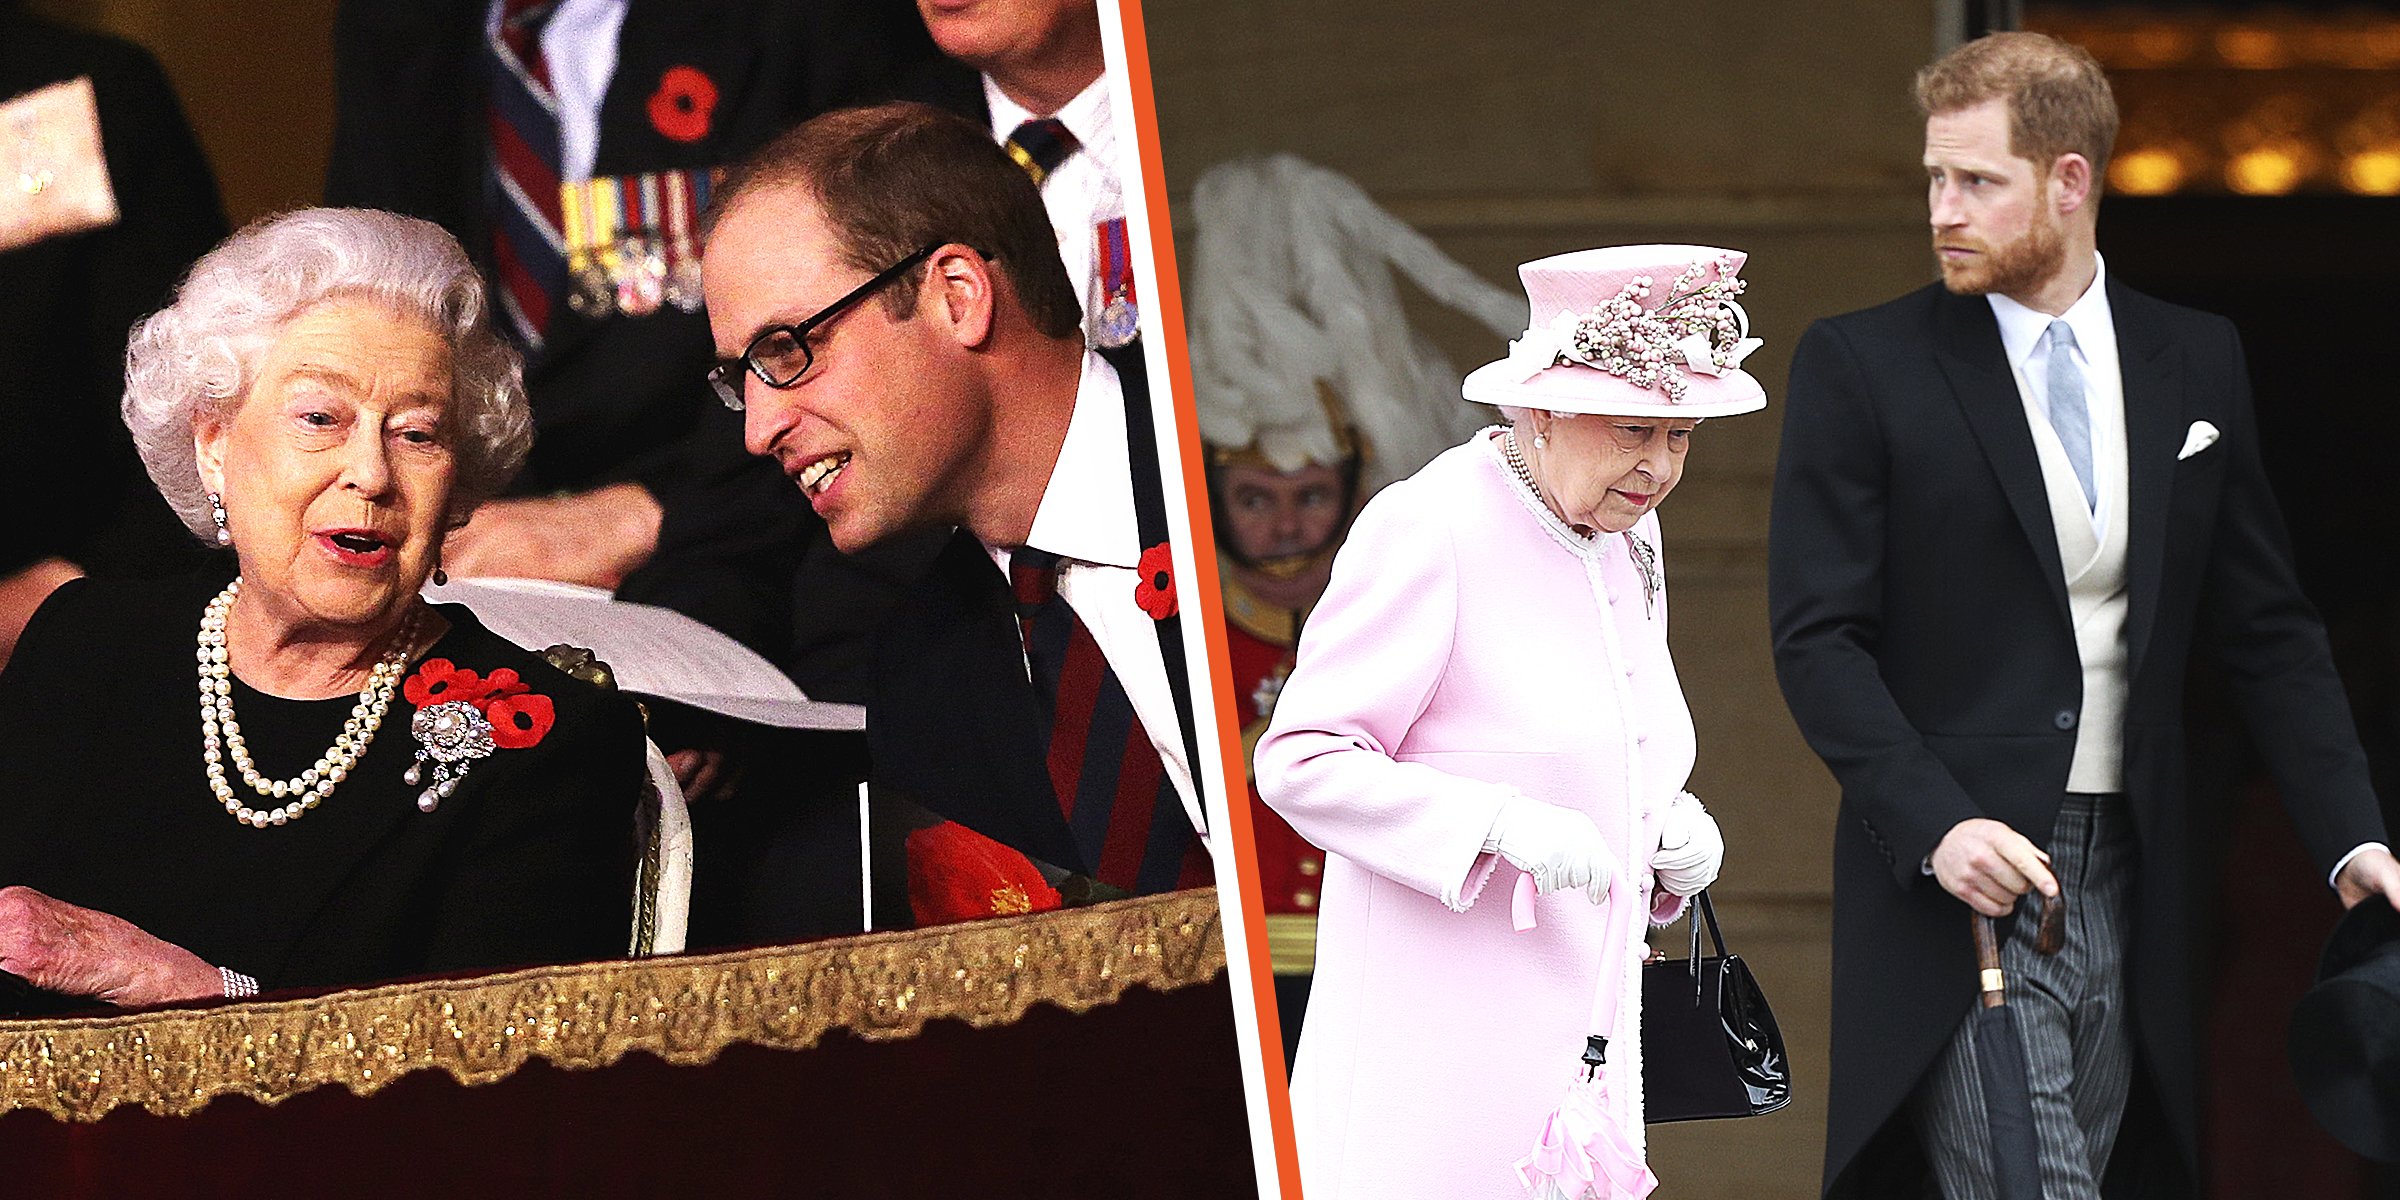 Queen Elizabeth II and Prince William ┃Queen Elizabeth II and Prince Harry ┃Source: Getty Images